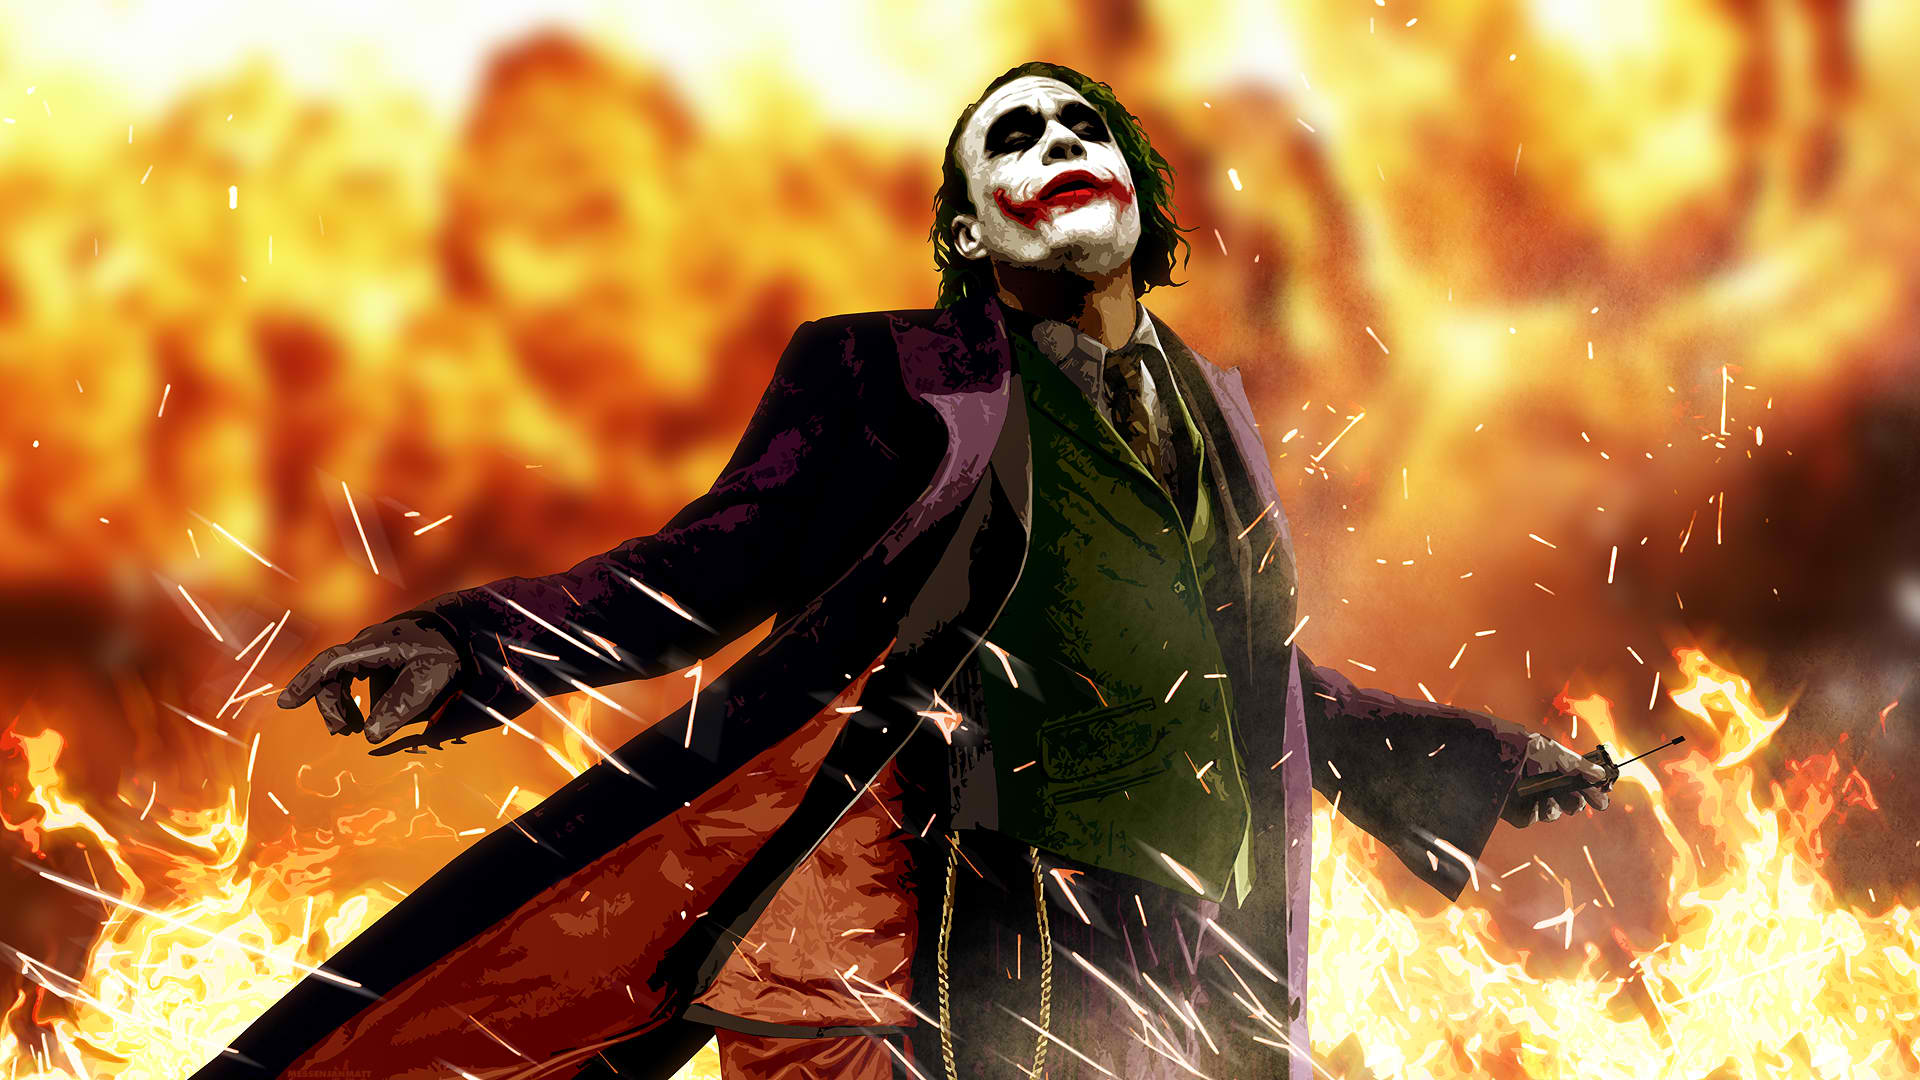 Batman The Dark Knight Joker Fire HD wallpaper | movies and tv series |  Wallpaper Better